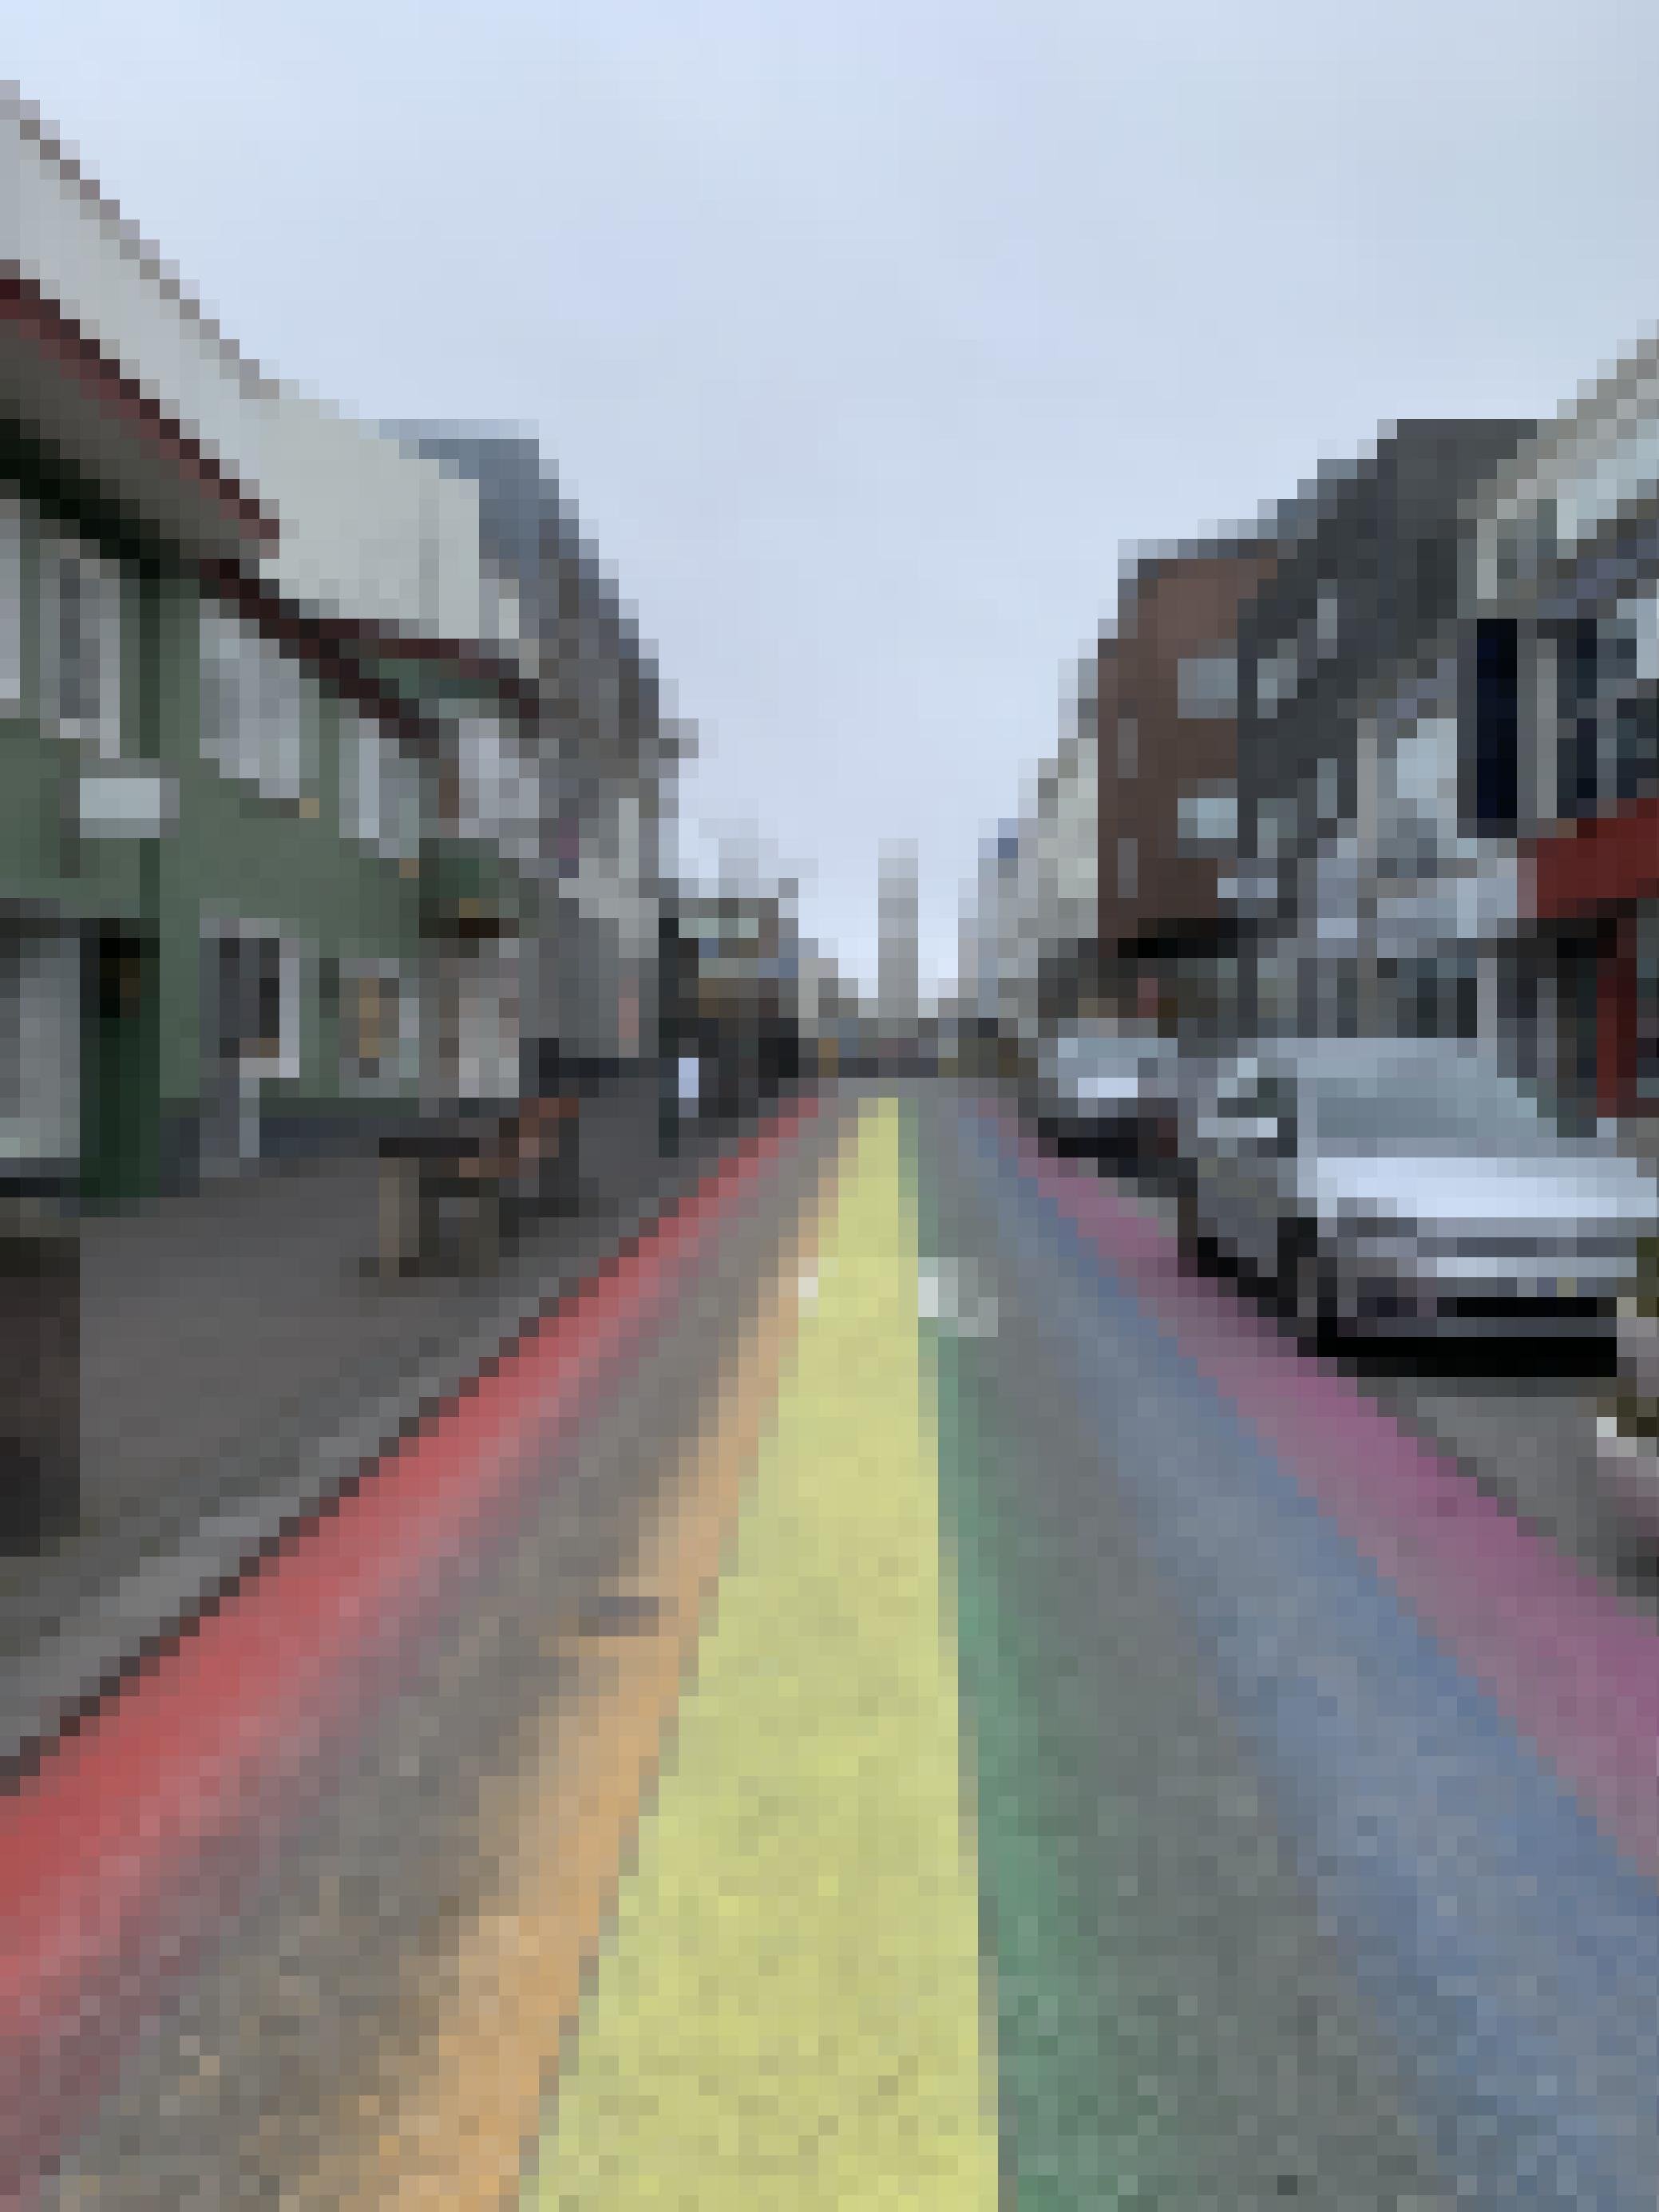 Leere Hauptstrasse in Reykjavik mit aufgemalten Regenbogen